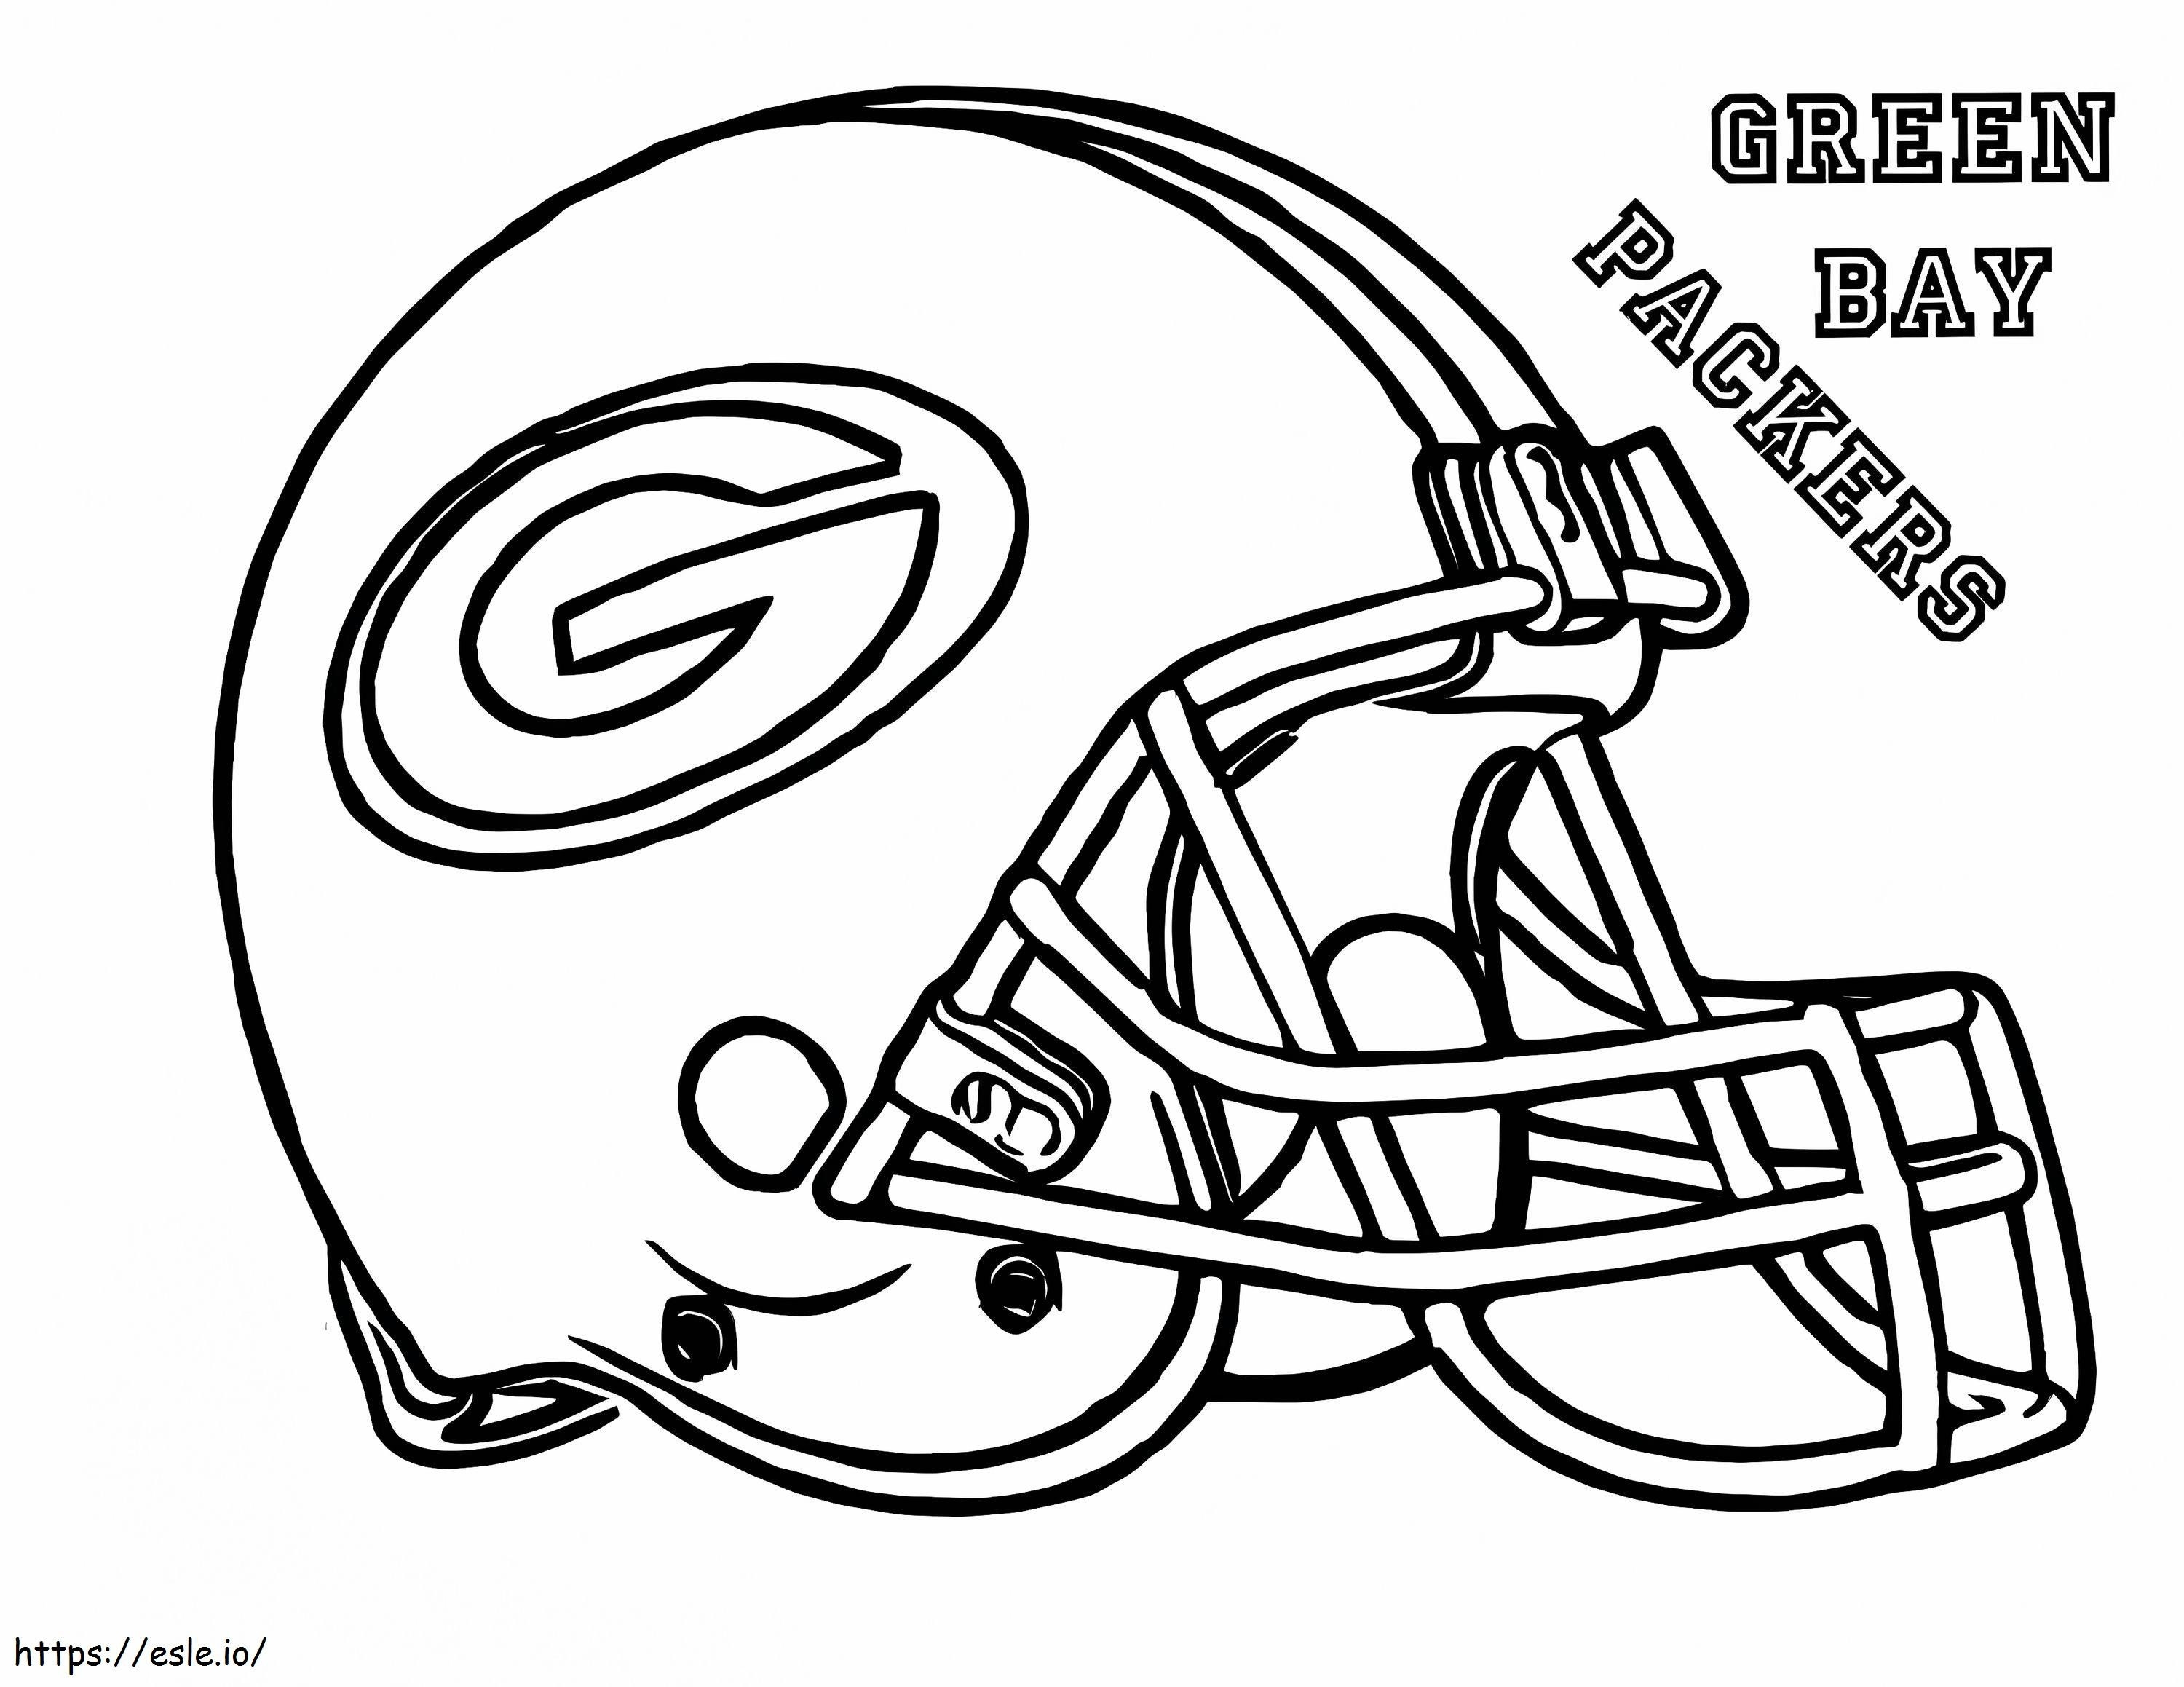 Green Bay Packers kleurplaat kleurplaat